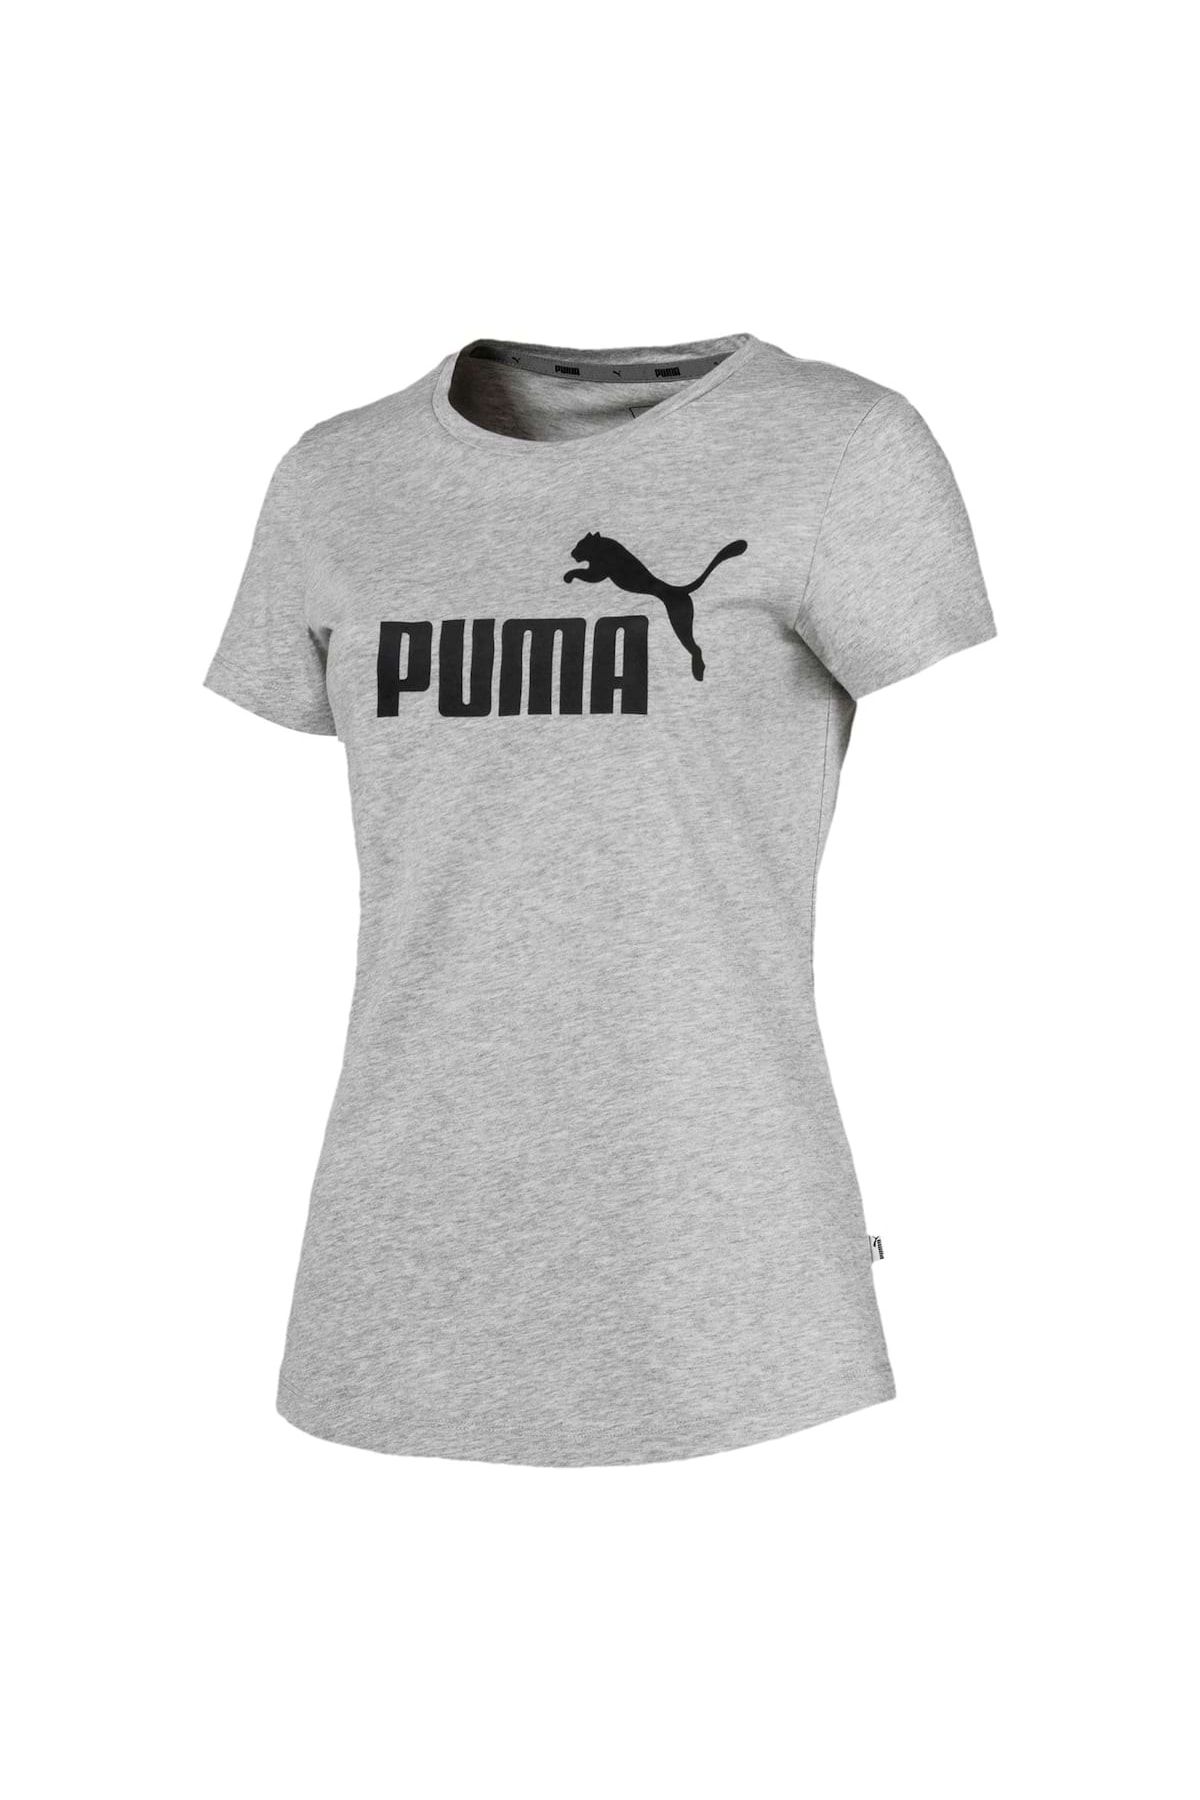 - T-Shirt Kurzarm, Rundhals, uni Damen Tee, Puma Logo Trendyol - Essentials